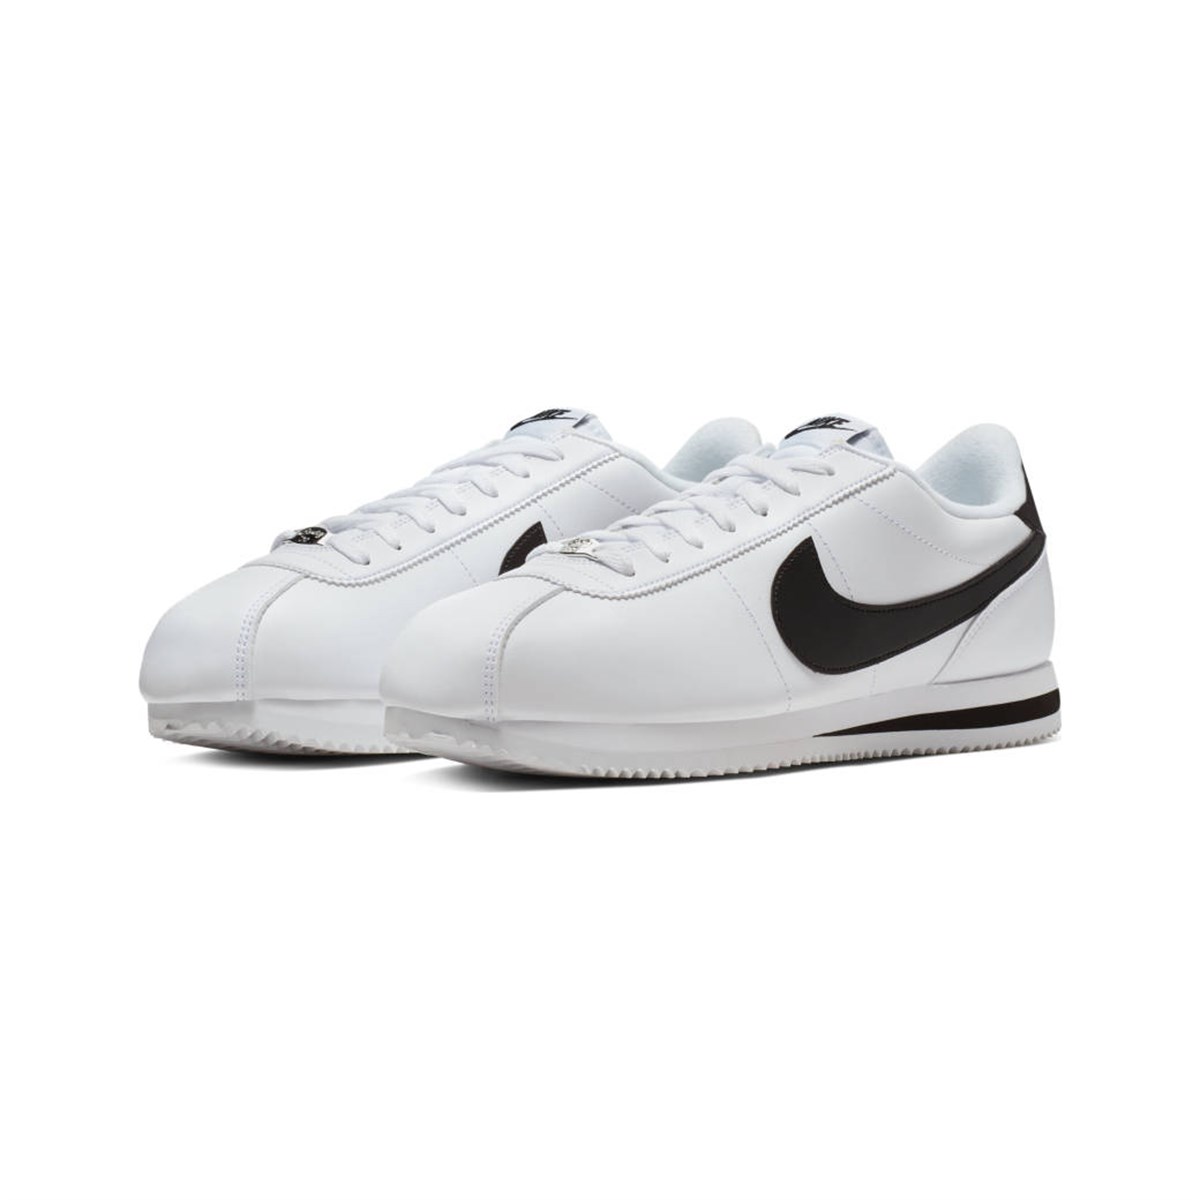 Nike Cortez Basic Leather Erkek Beyaz Spor Ayakkabı Ayakkabı 819719-100 |  Nike Modelleri